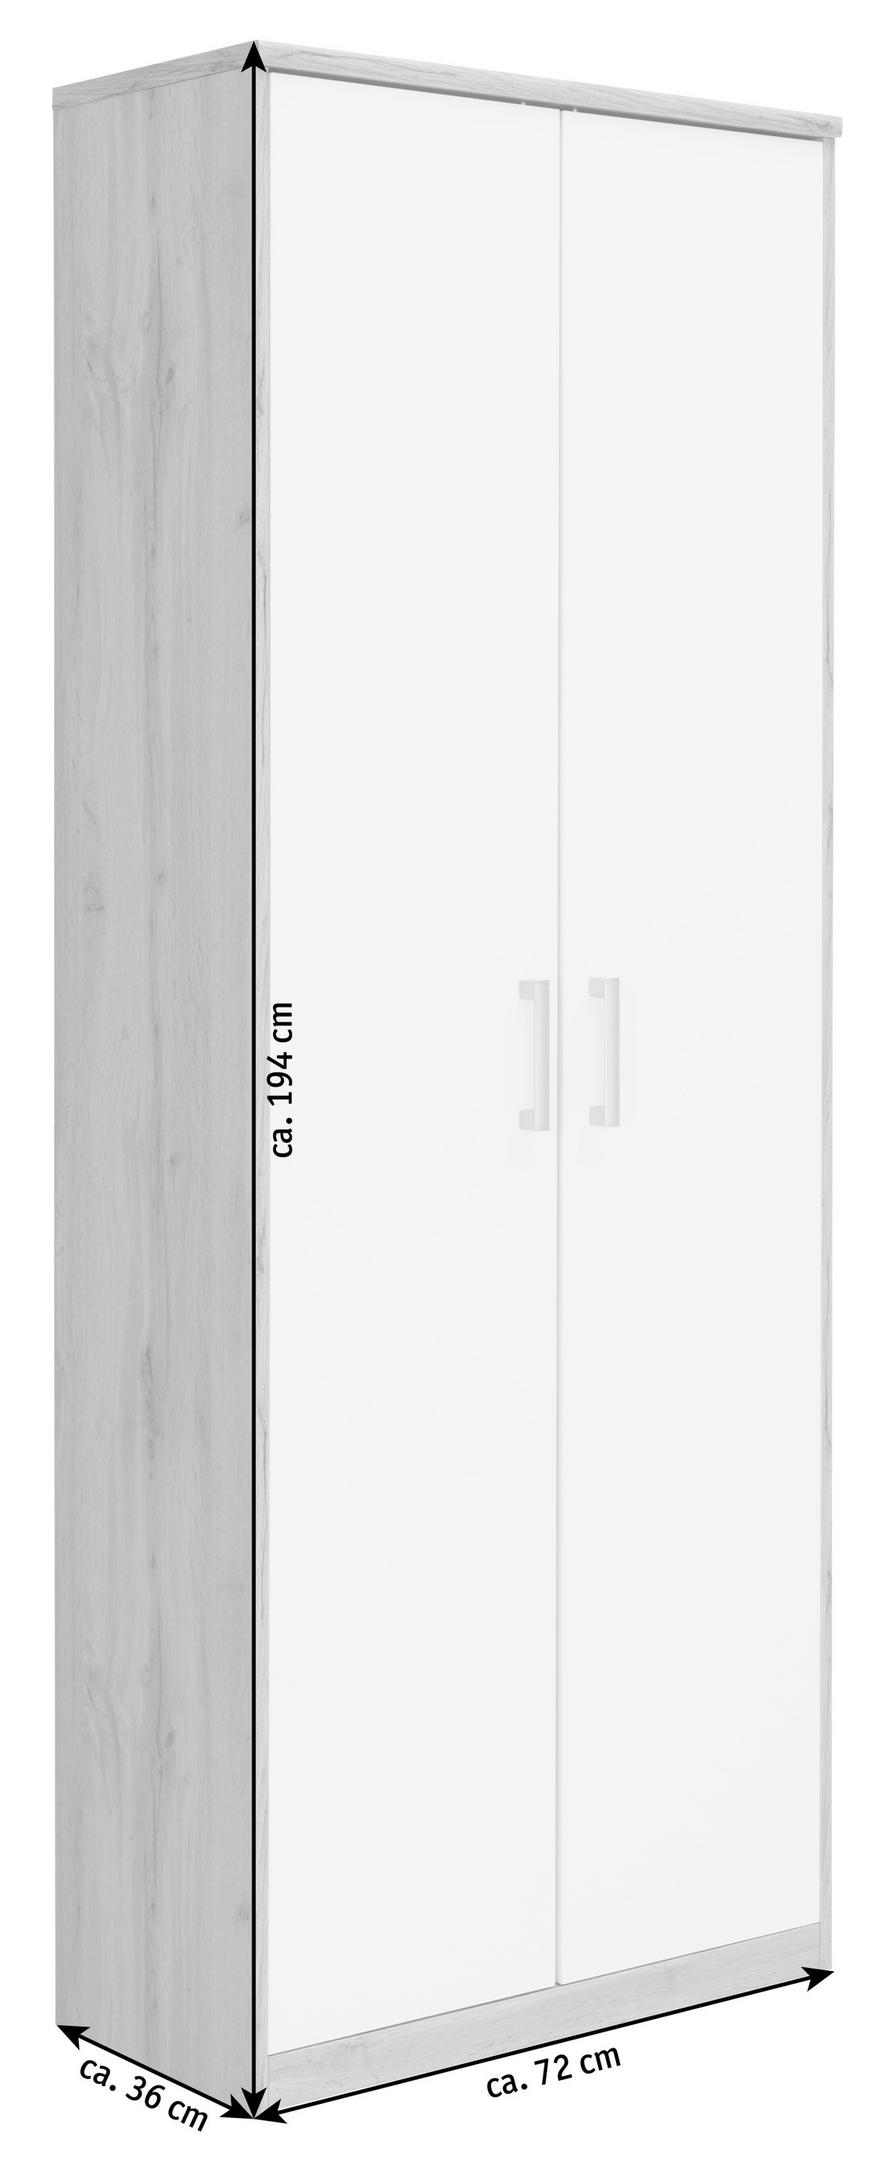 MEHRZWECKSCHRANK 72/194/36 cm  - Silberfarben/Eiche Wotan, Basics, Holzwerkstoff/Kunststoff (72/194/36cm) - Xora